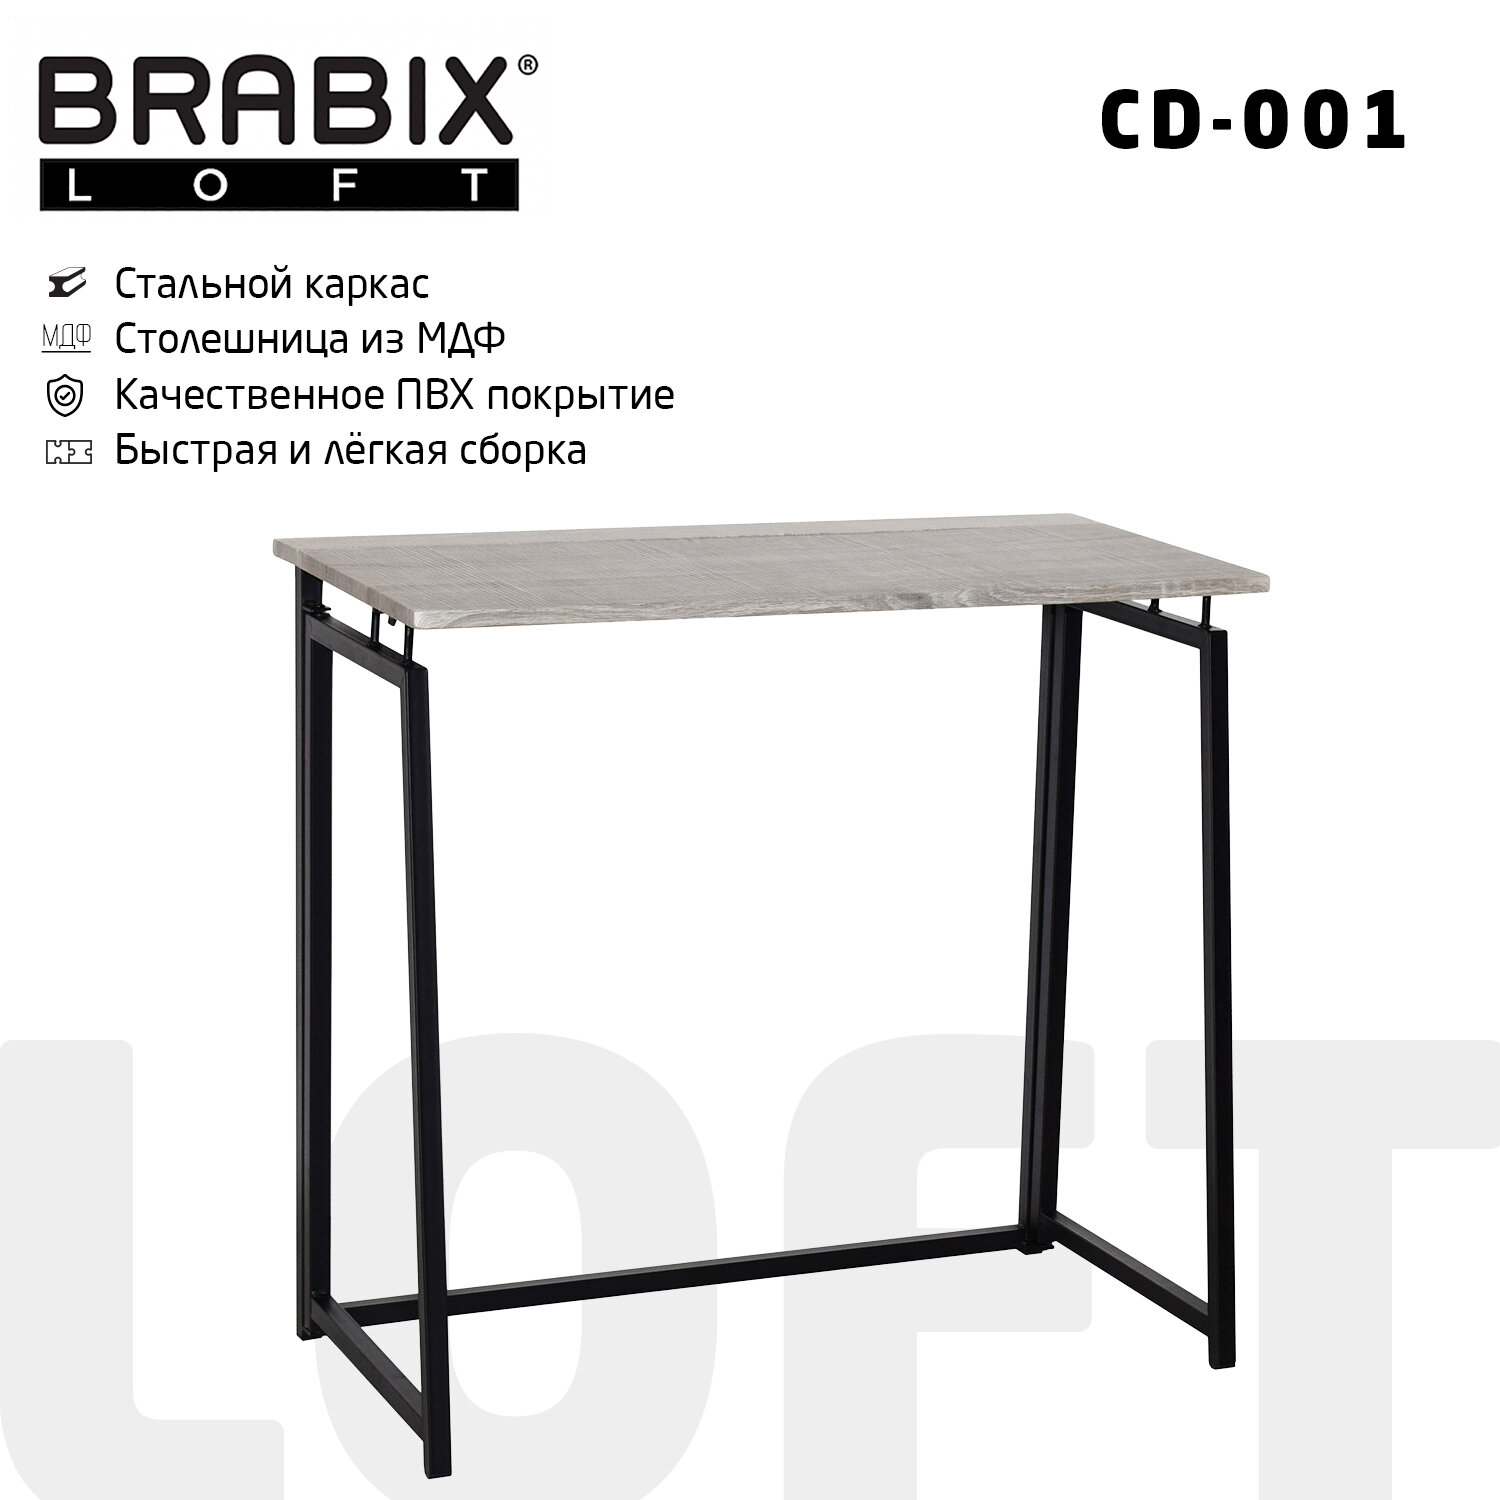 Стол Brabix Loft CD-001